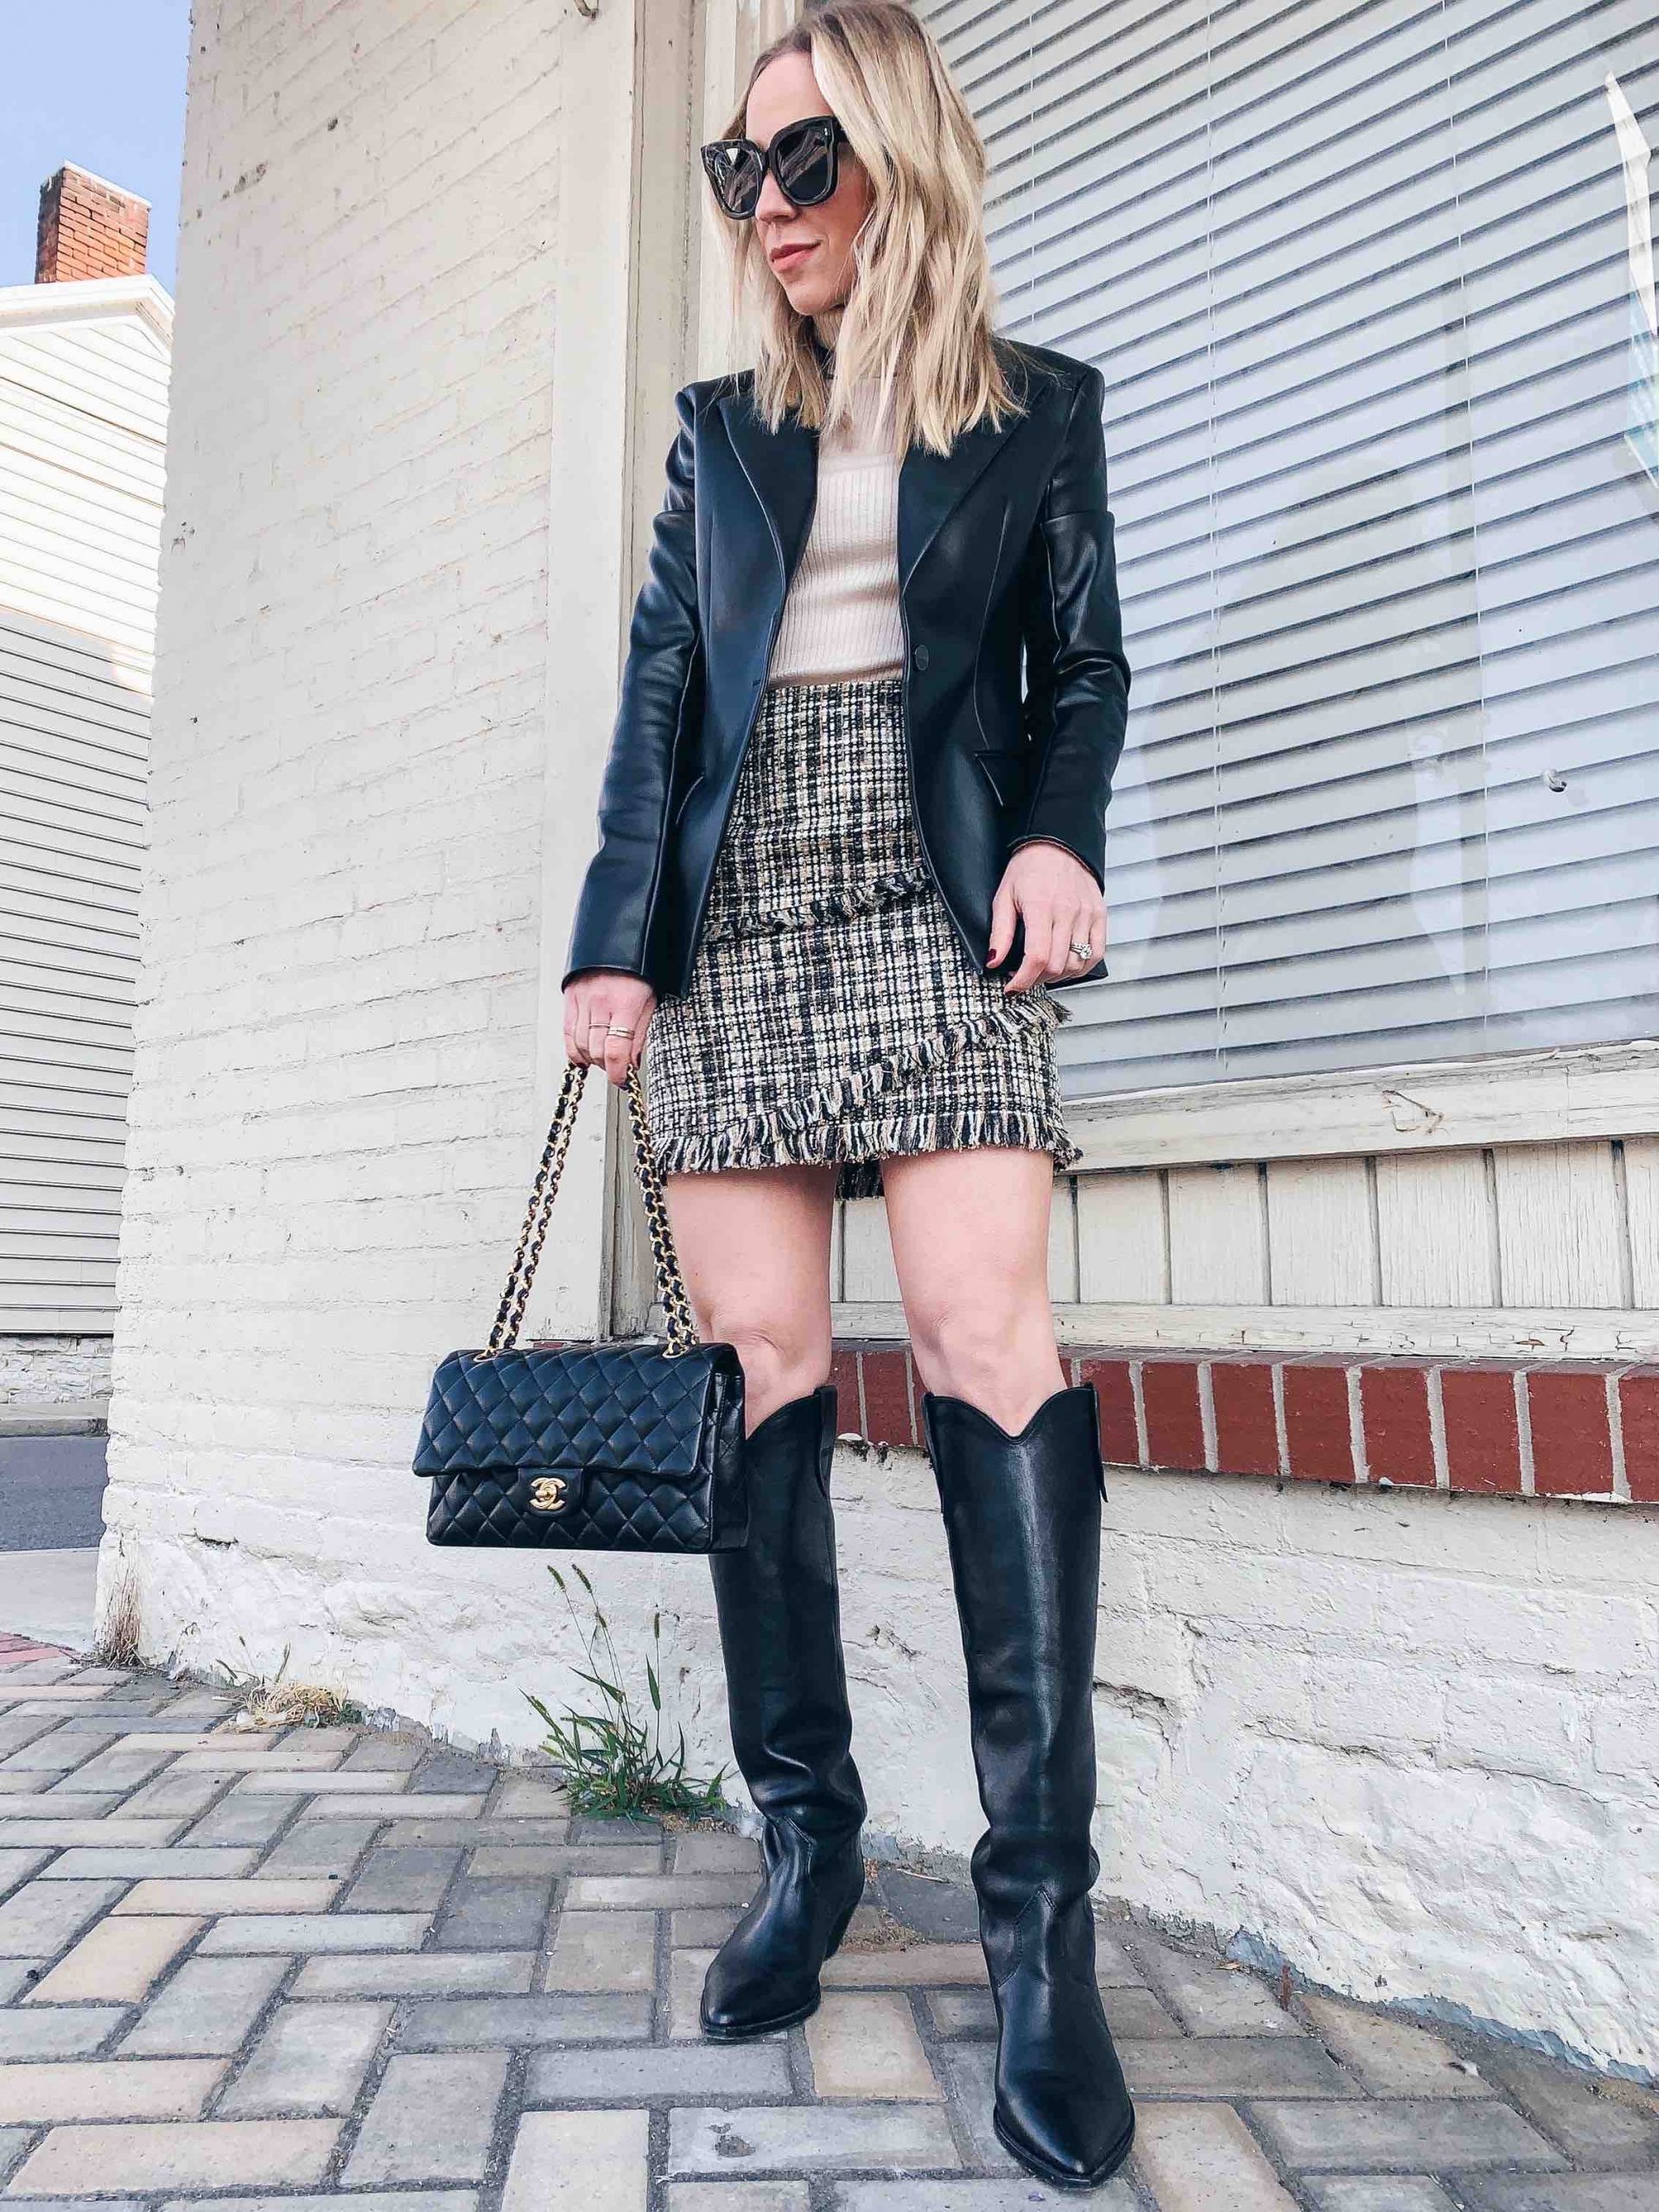 Meagan Brandon fashion blogger of Meagan's Moda wears layered fall